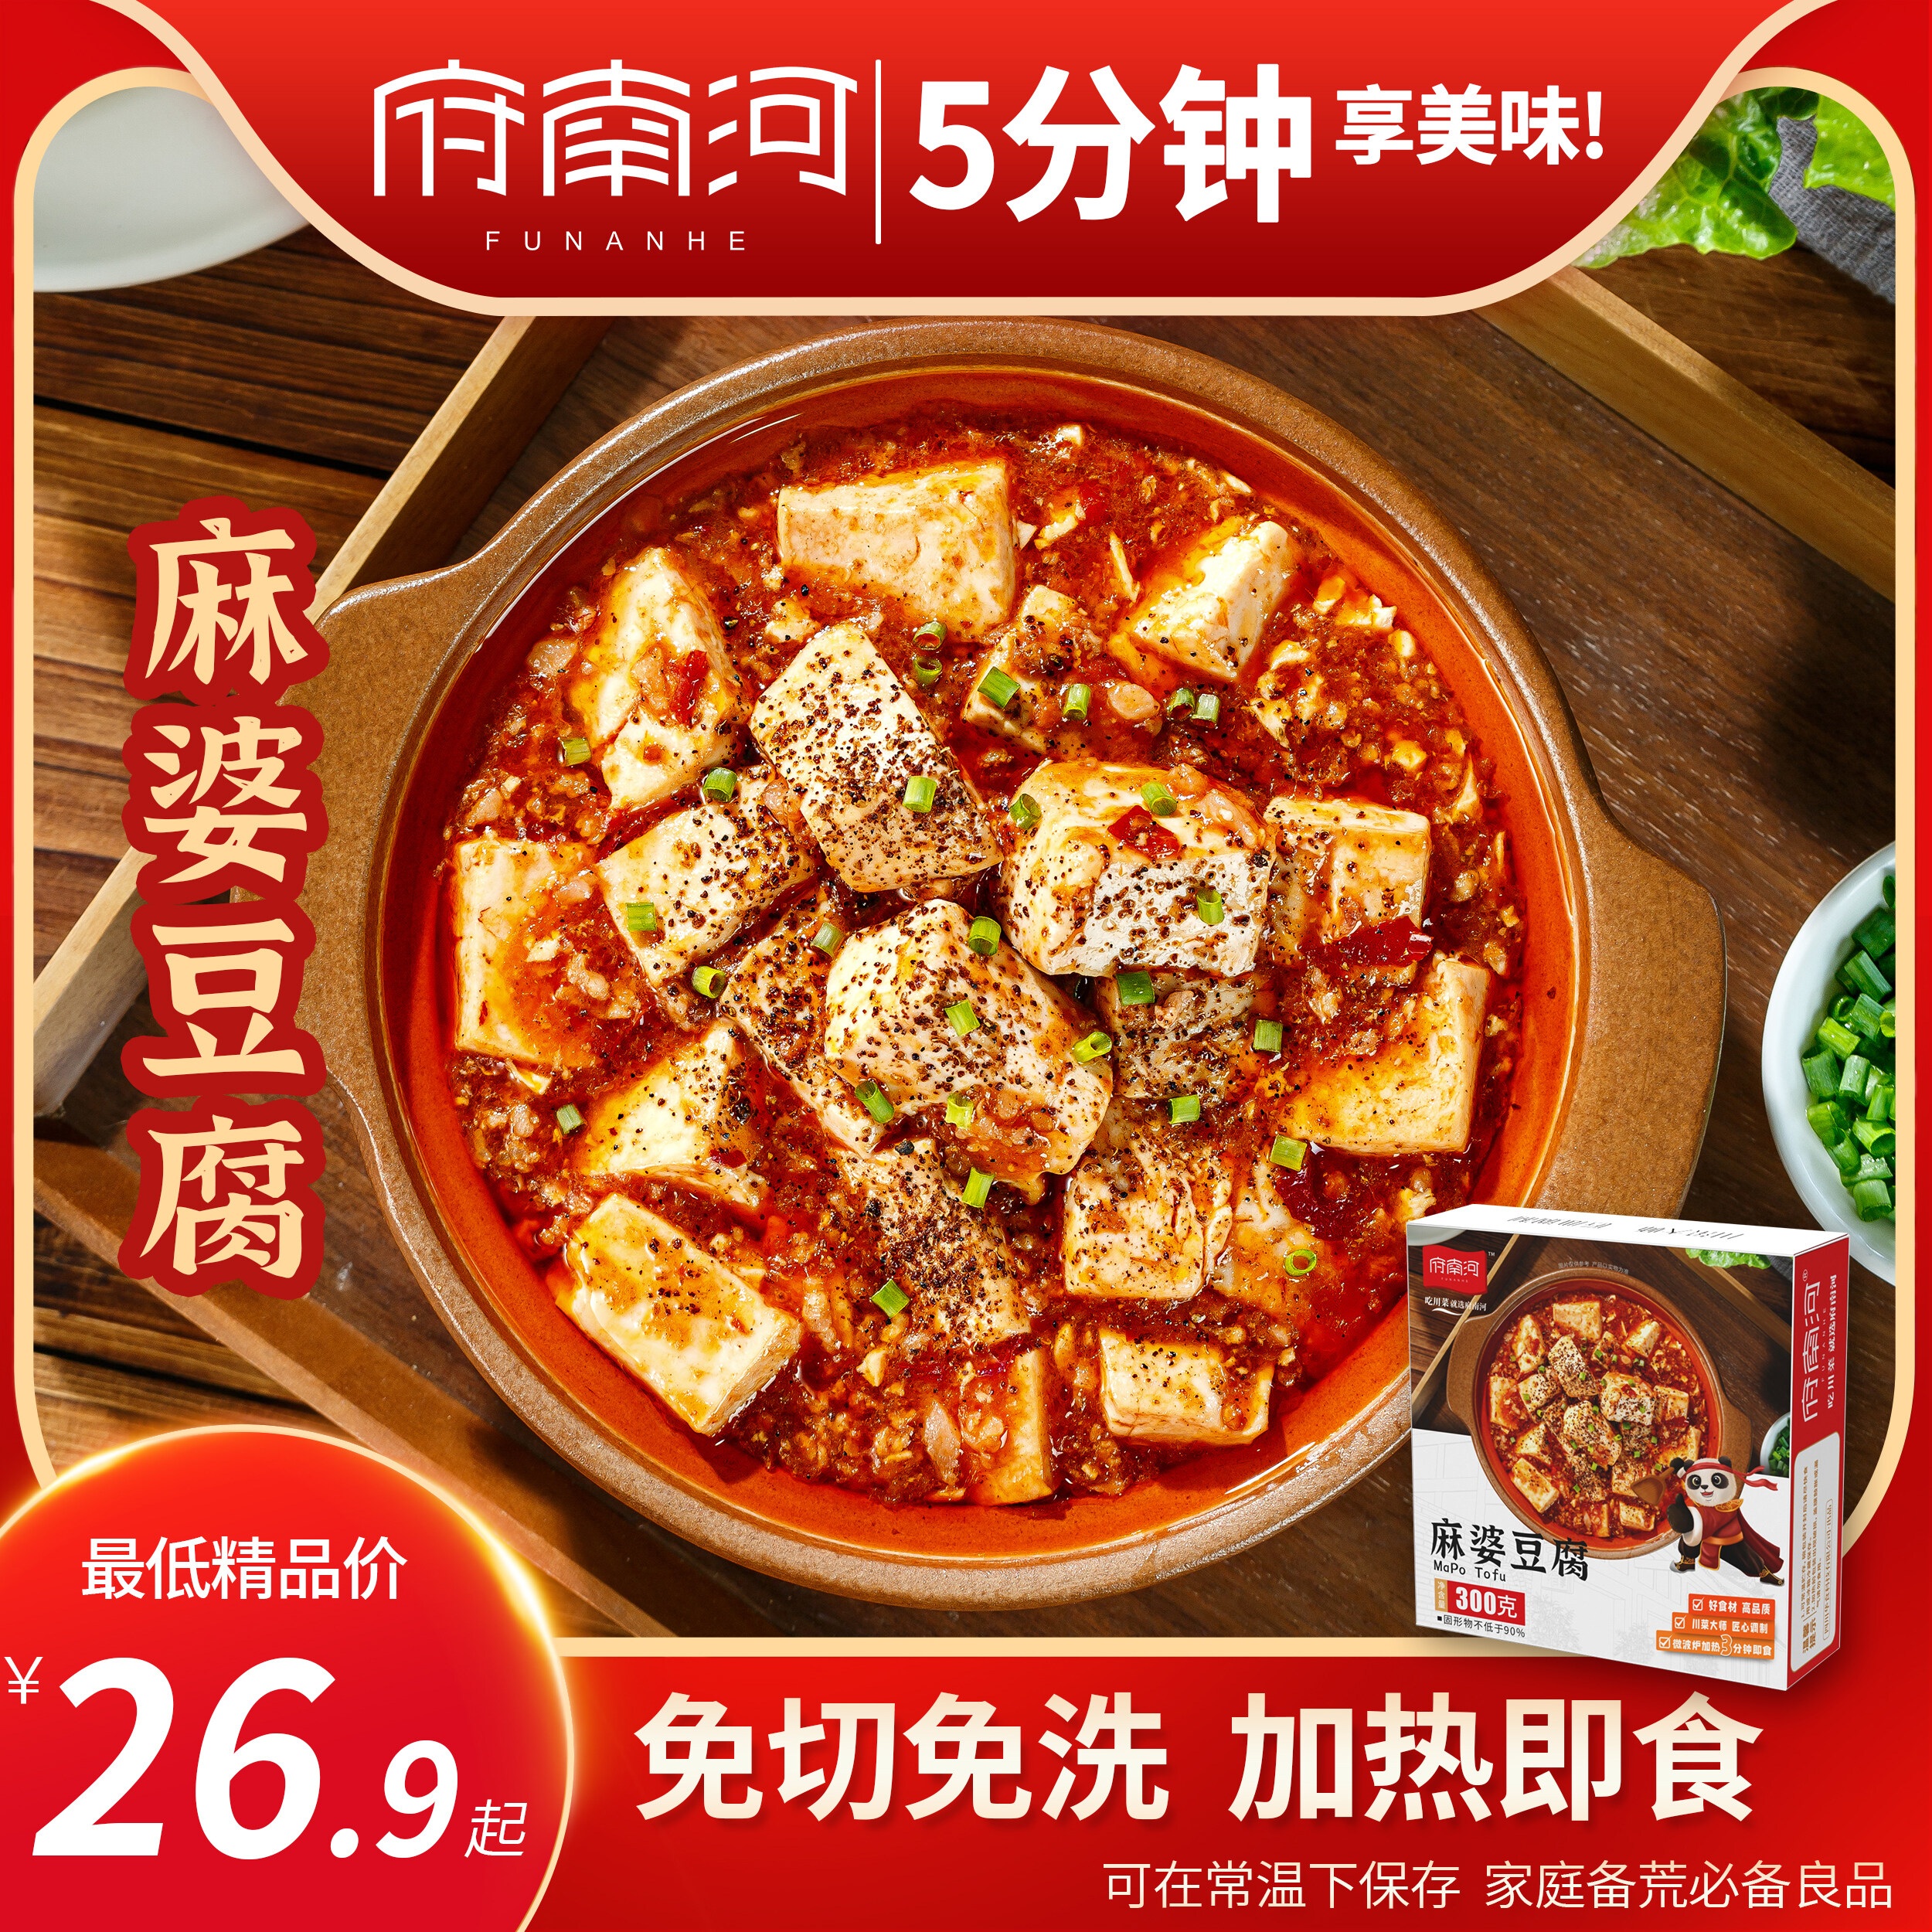 府南河麻婆豆腐菜肴料理包常温预制菜速食300g加热即食好评如潮